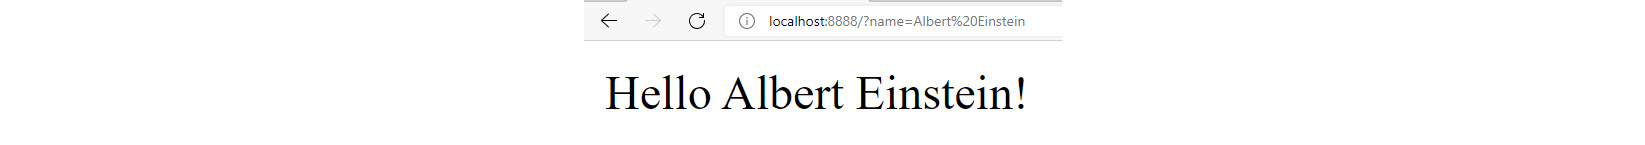 Figure 13.3: Browser message for name = Albert Einstein
